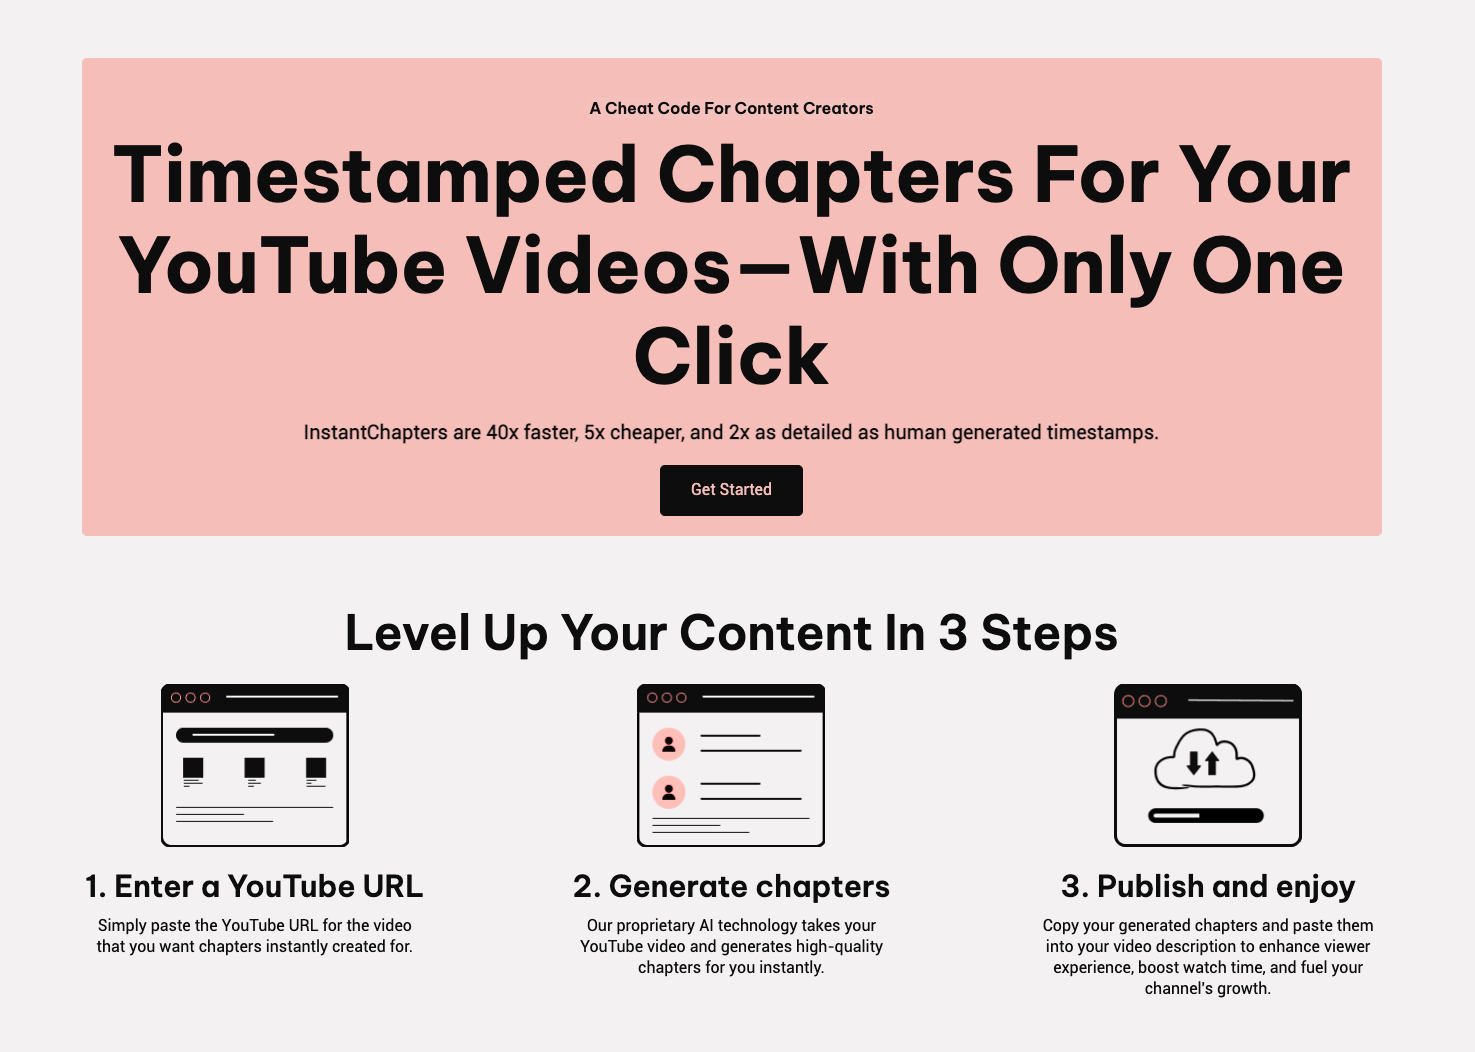 Capítulos instantáneos: una herramienta para crear capítulos y organizar videos de YouTube